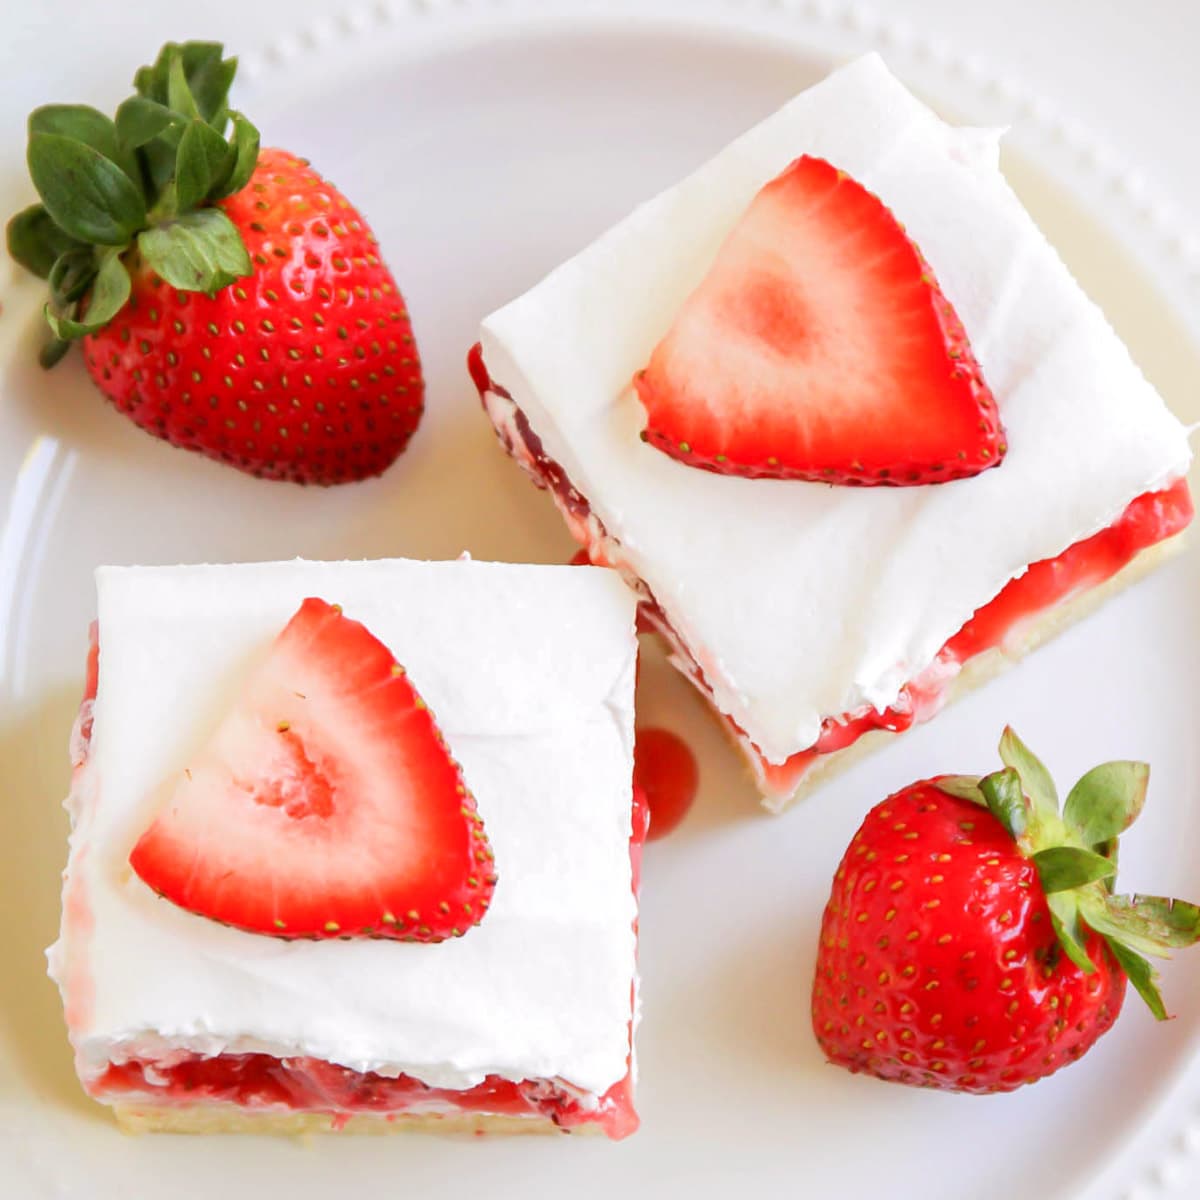 甜点条食谱——草莓奶油芝bob综合手机客户士条，上面放草莓片，旁边放两个草莓，放在白色盘子里。